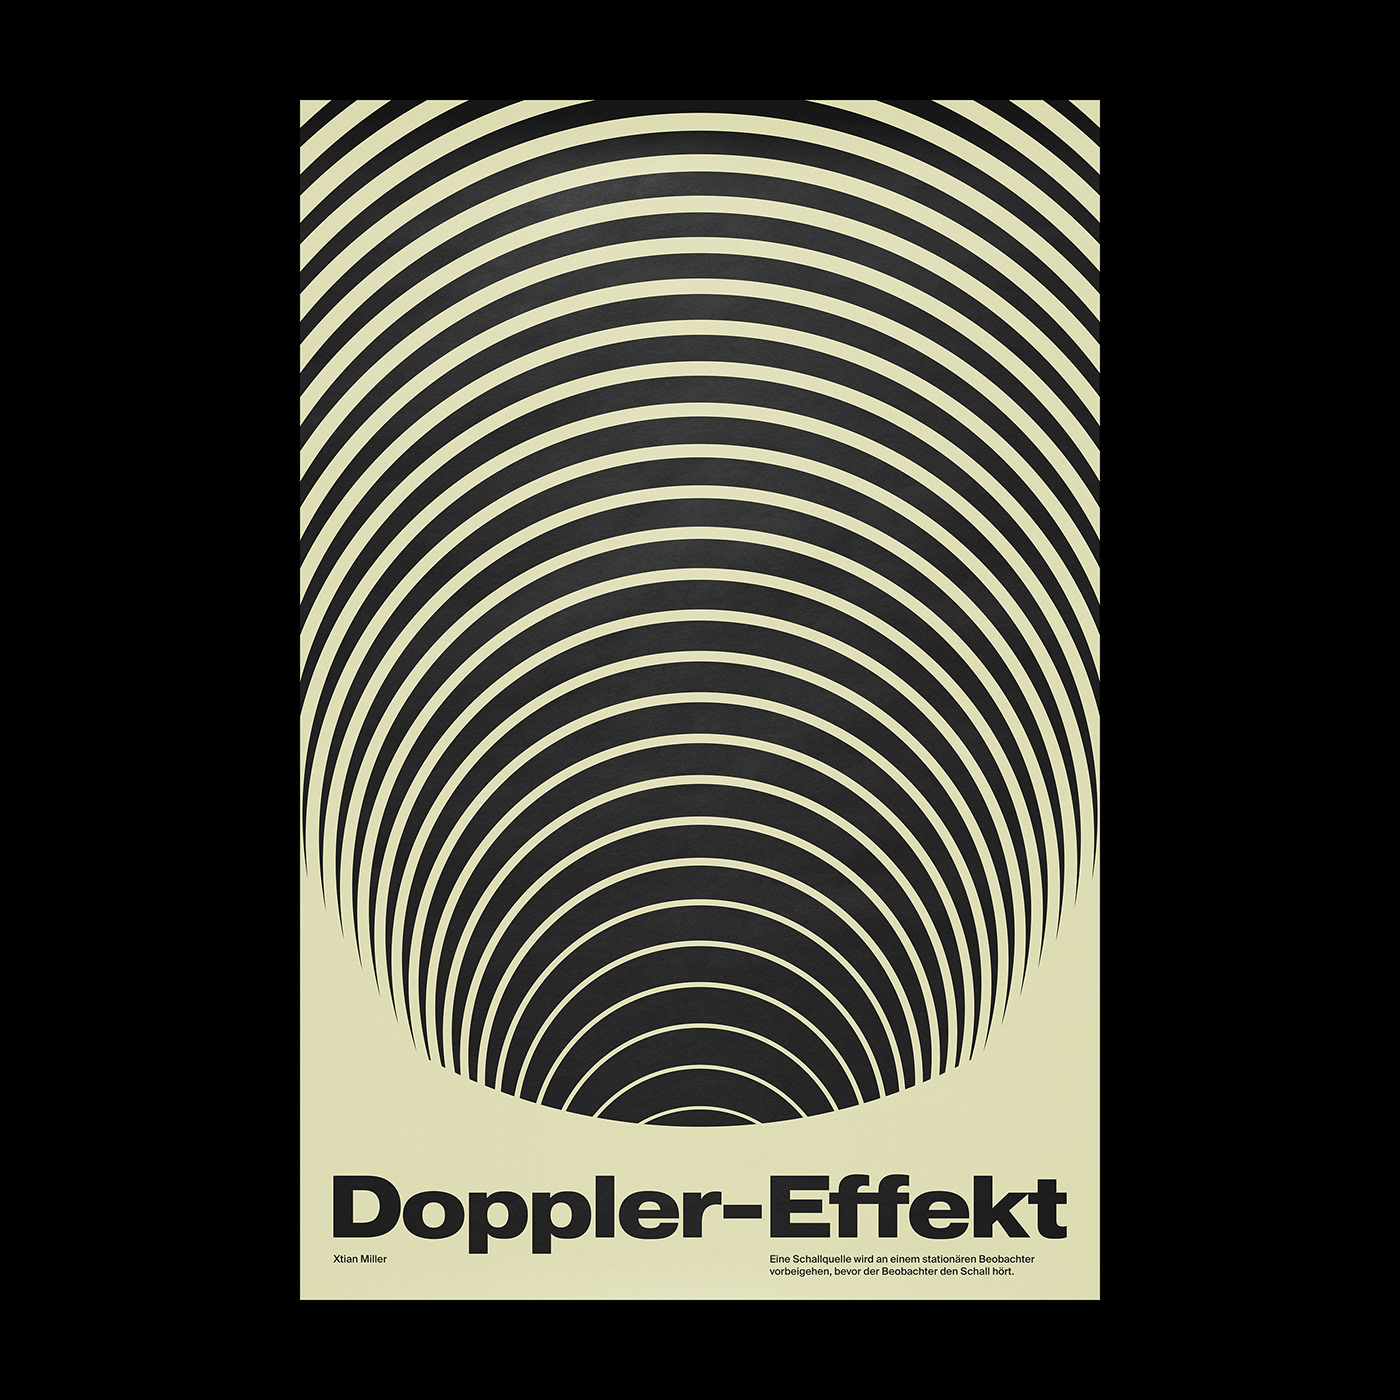 Doppler-Effekt poster by Xtian Miller